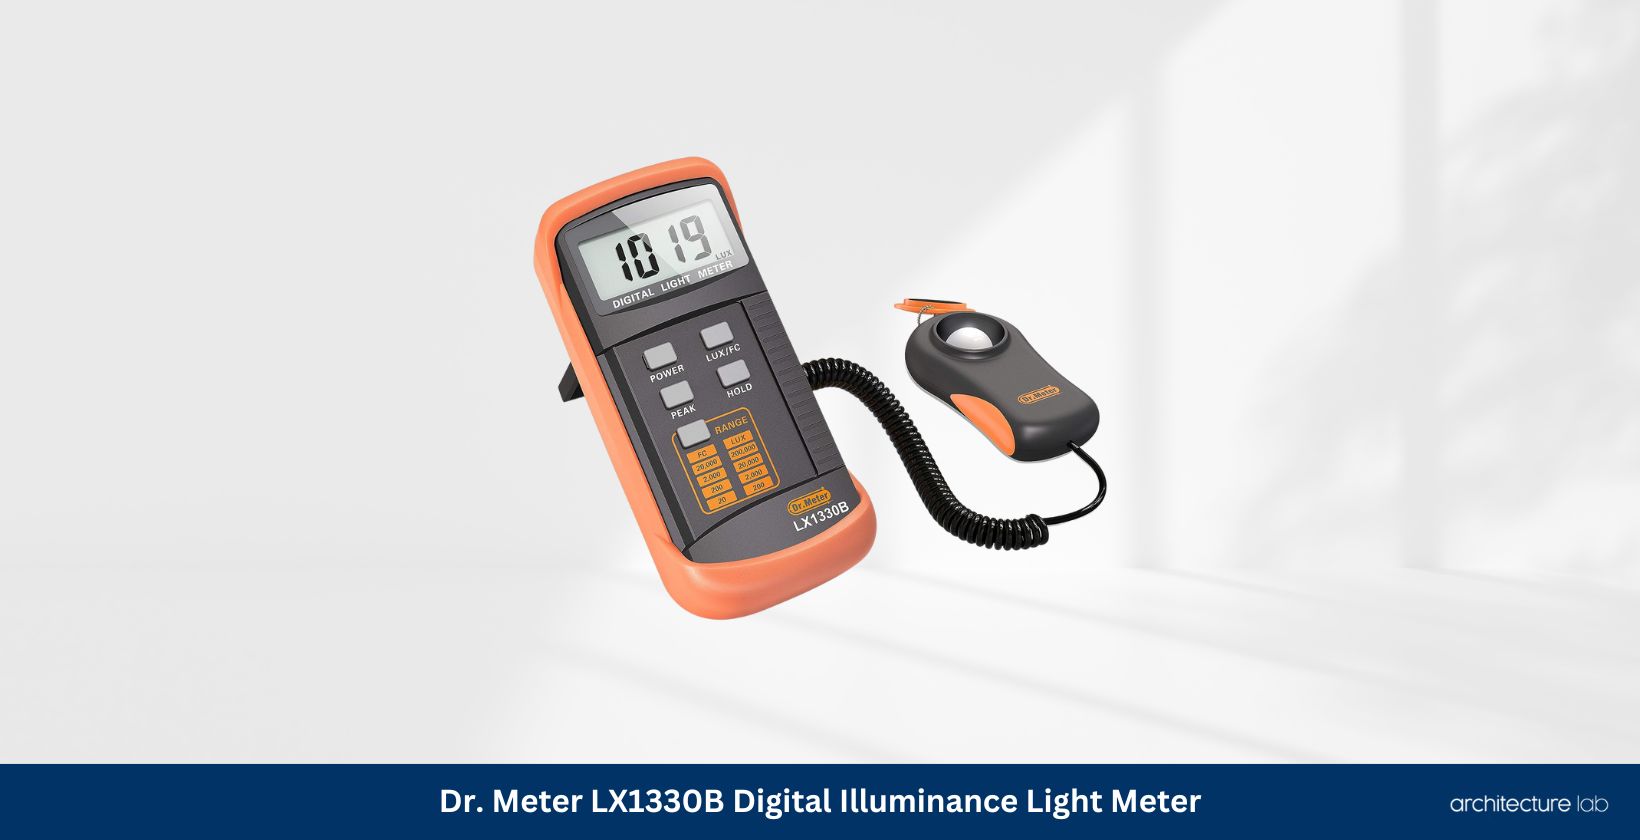 Dr. Meter lx1330b digital illuminance light meter